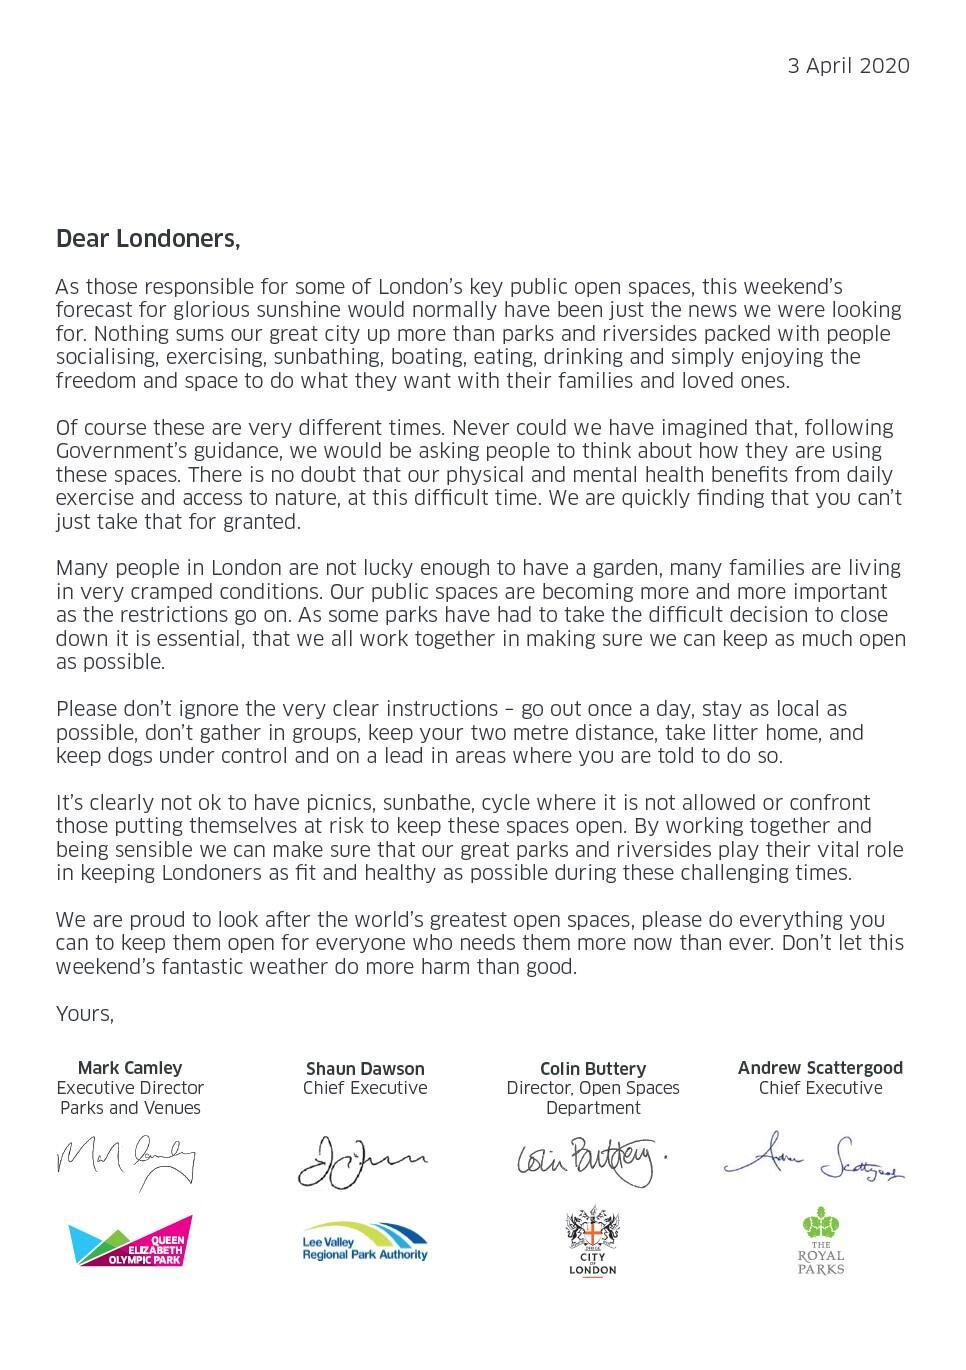 Image of letter to Londoner 3 April 2020